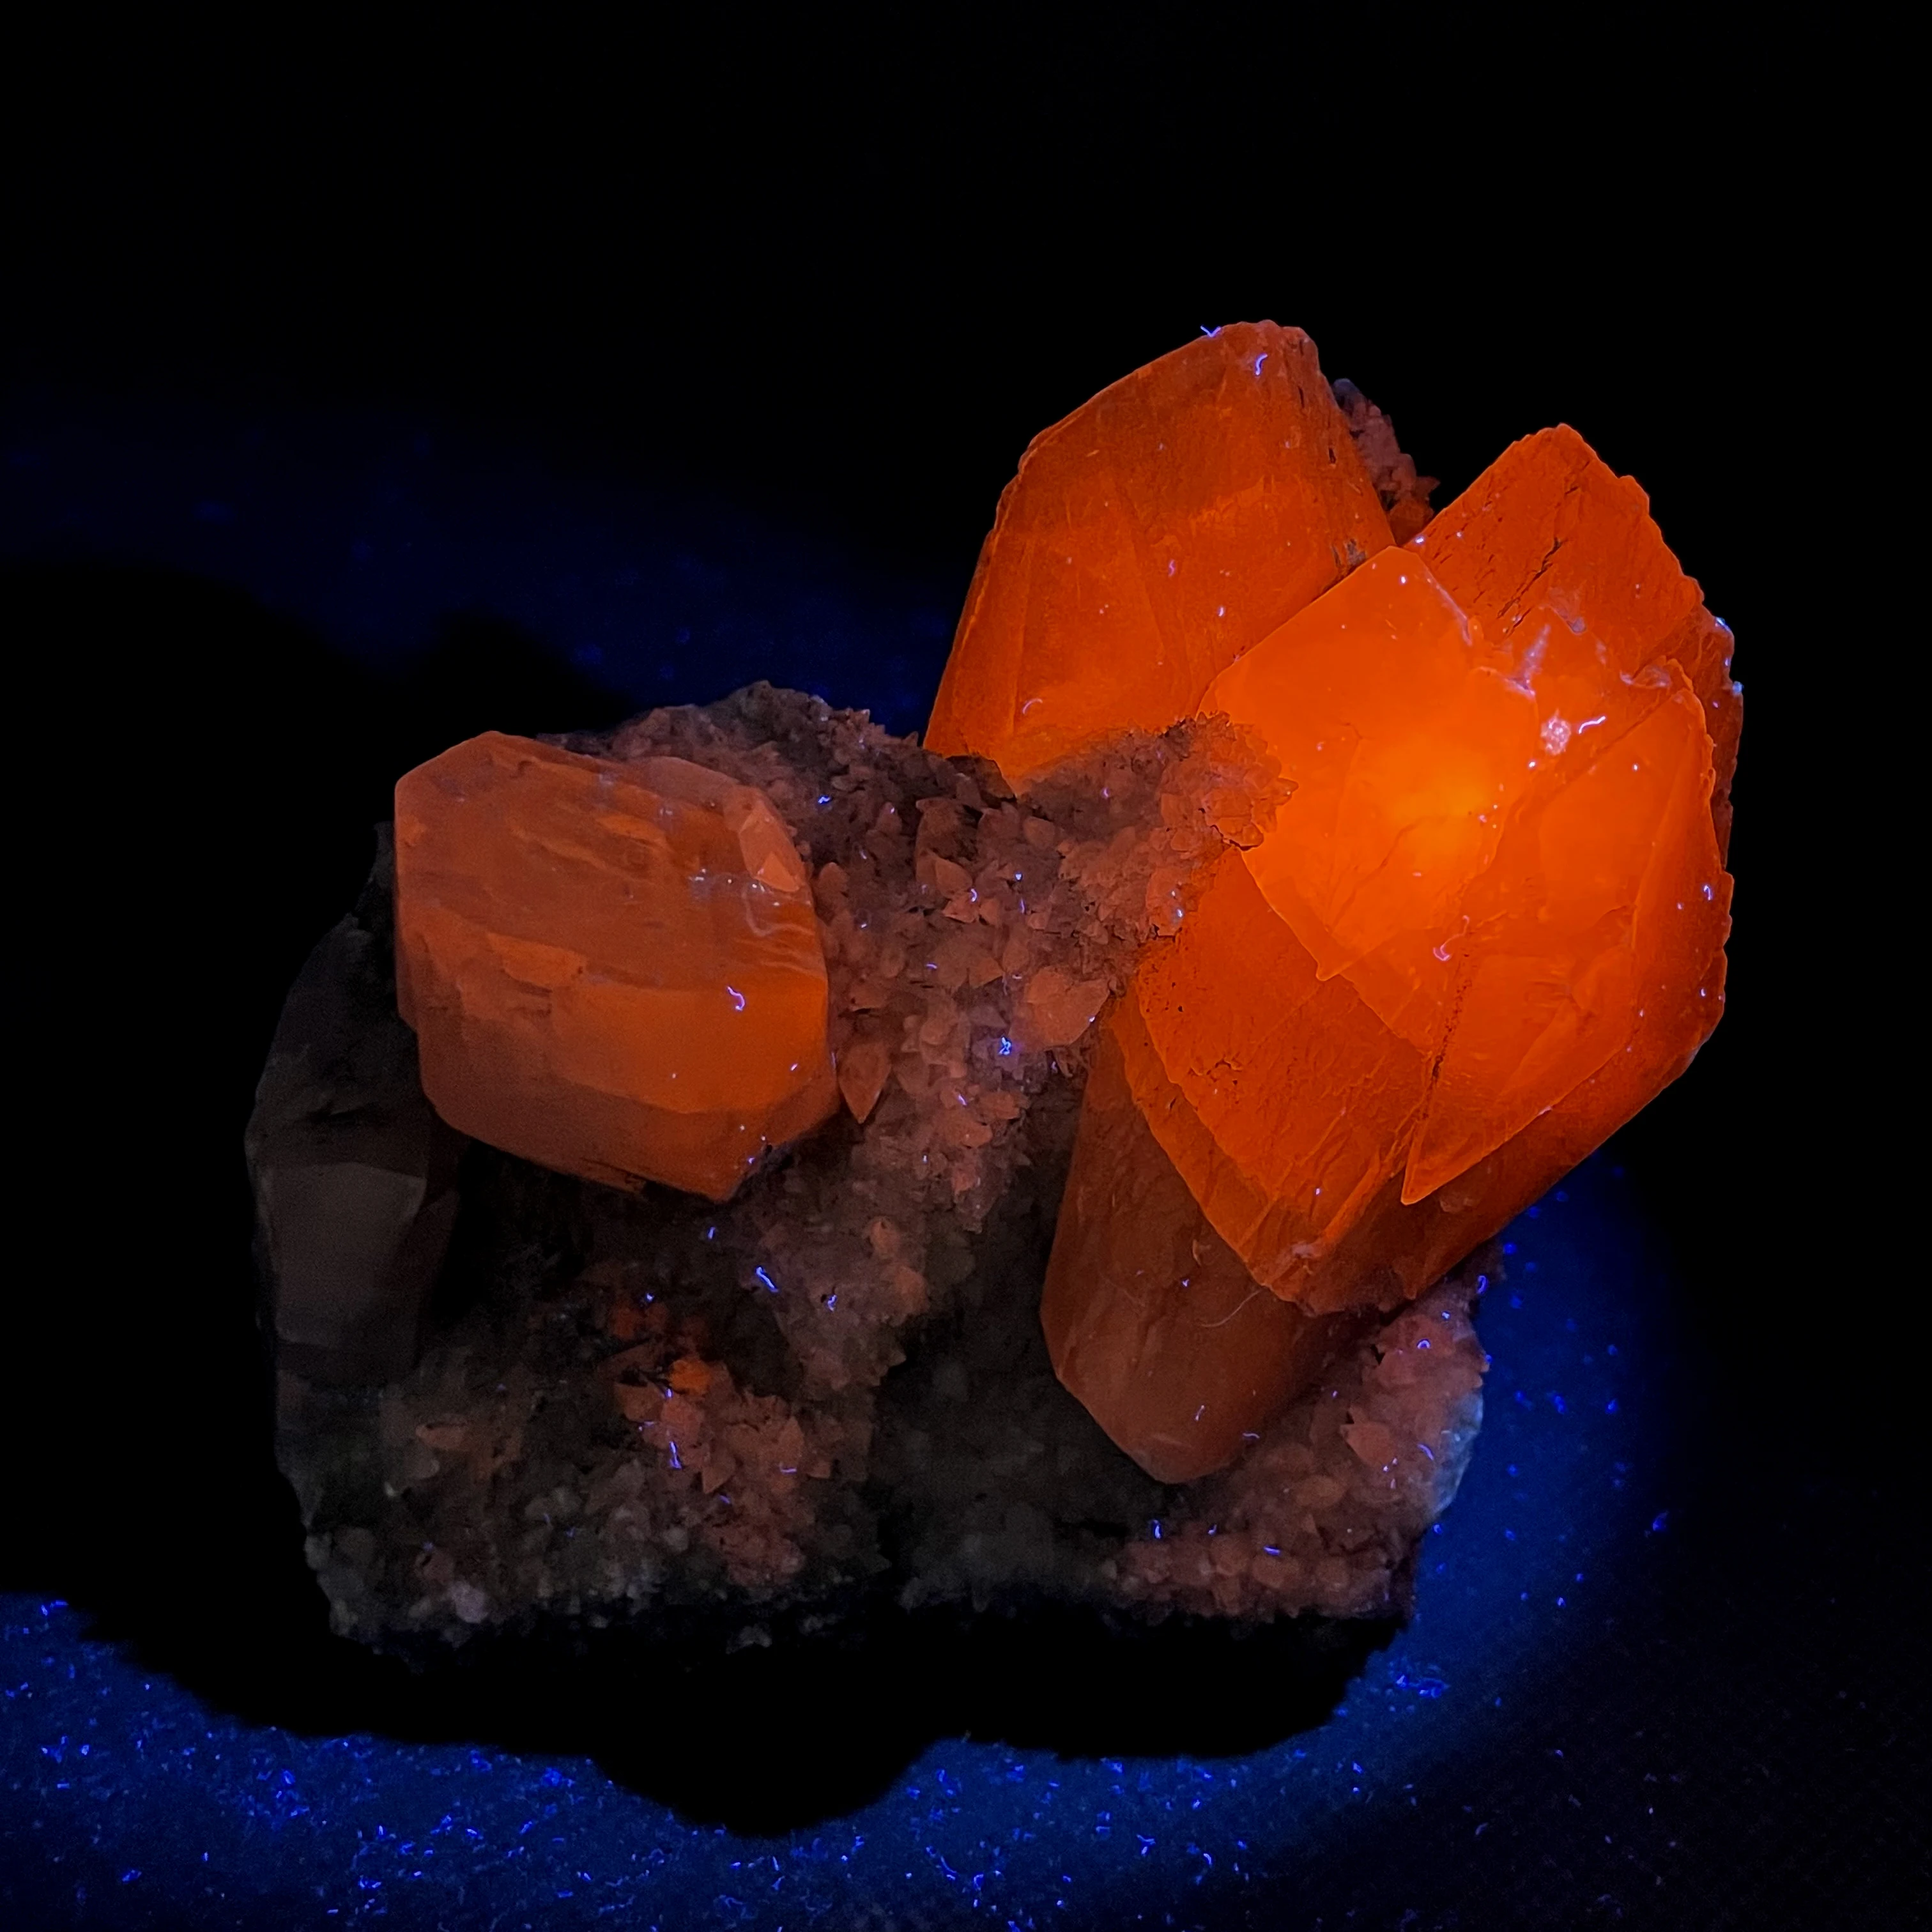 NEW! BIG! 462g natural Fluorescent calcite mineral specimen stones and crystals healing crystals quartz gemstones